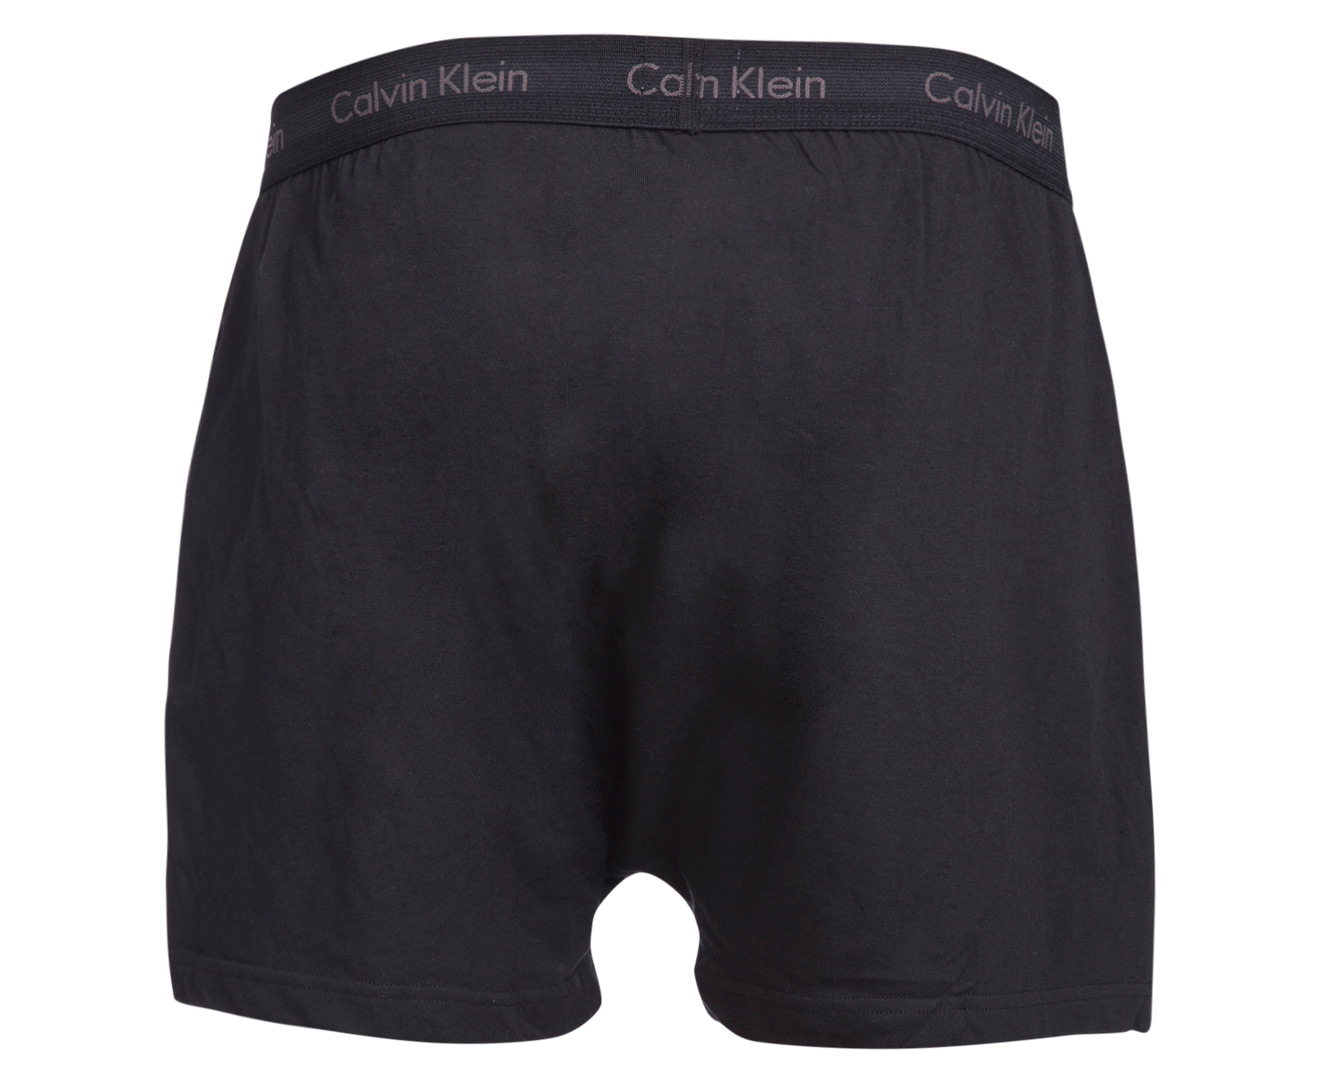 Calvin Klein Men's Classic Knit Boxer 3-Pack - Black | Catch.com.au